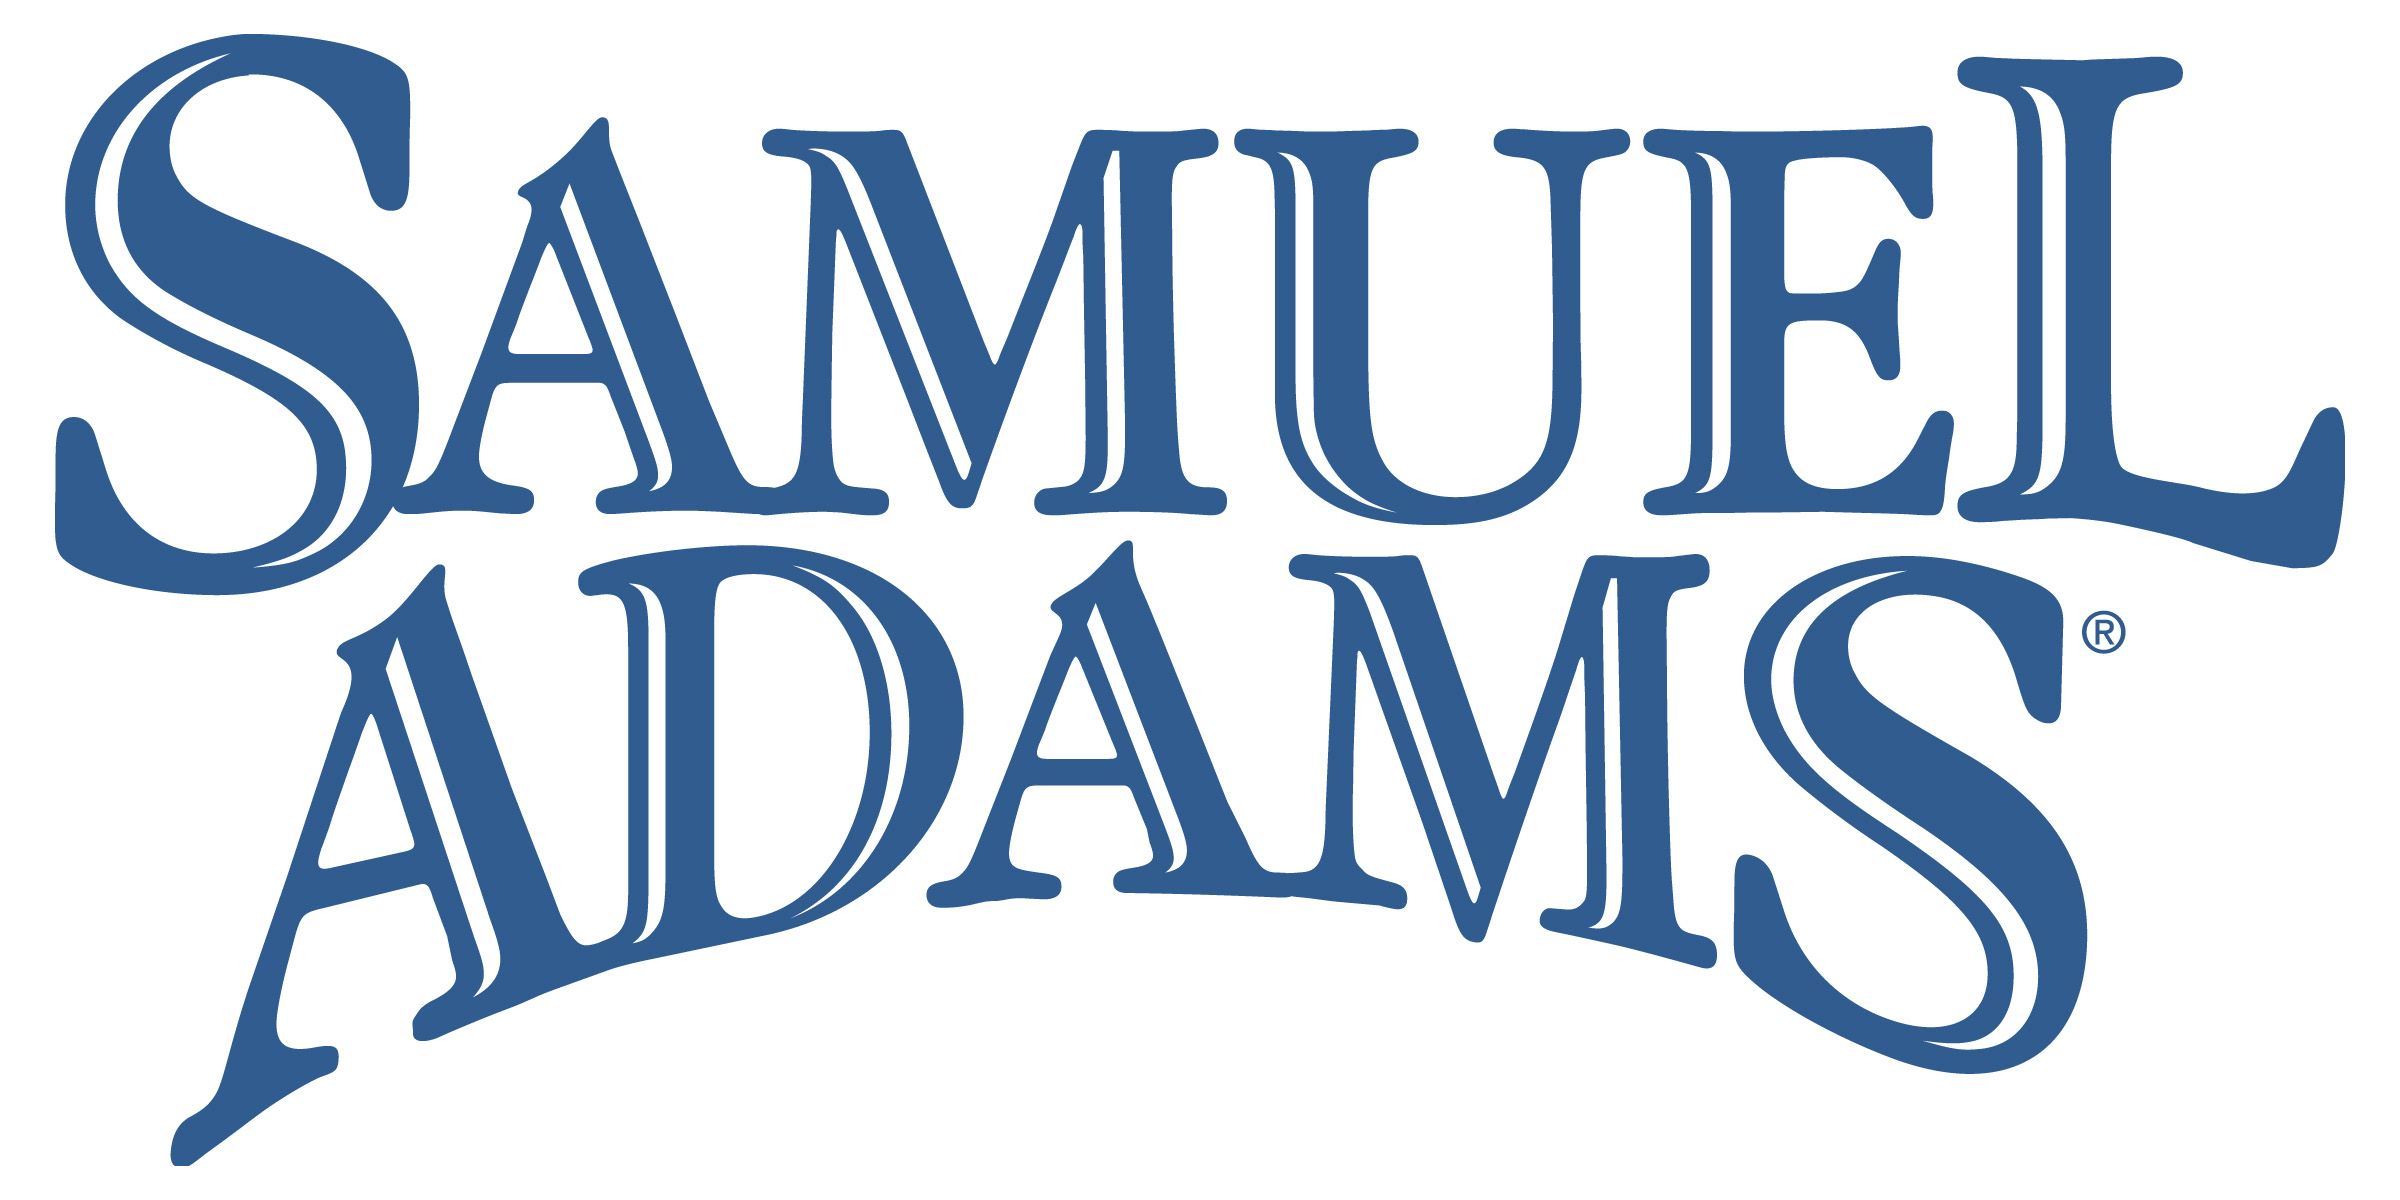 Samuel_Adams_Logo.jpg